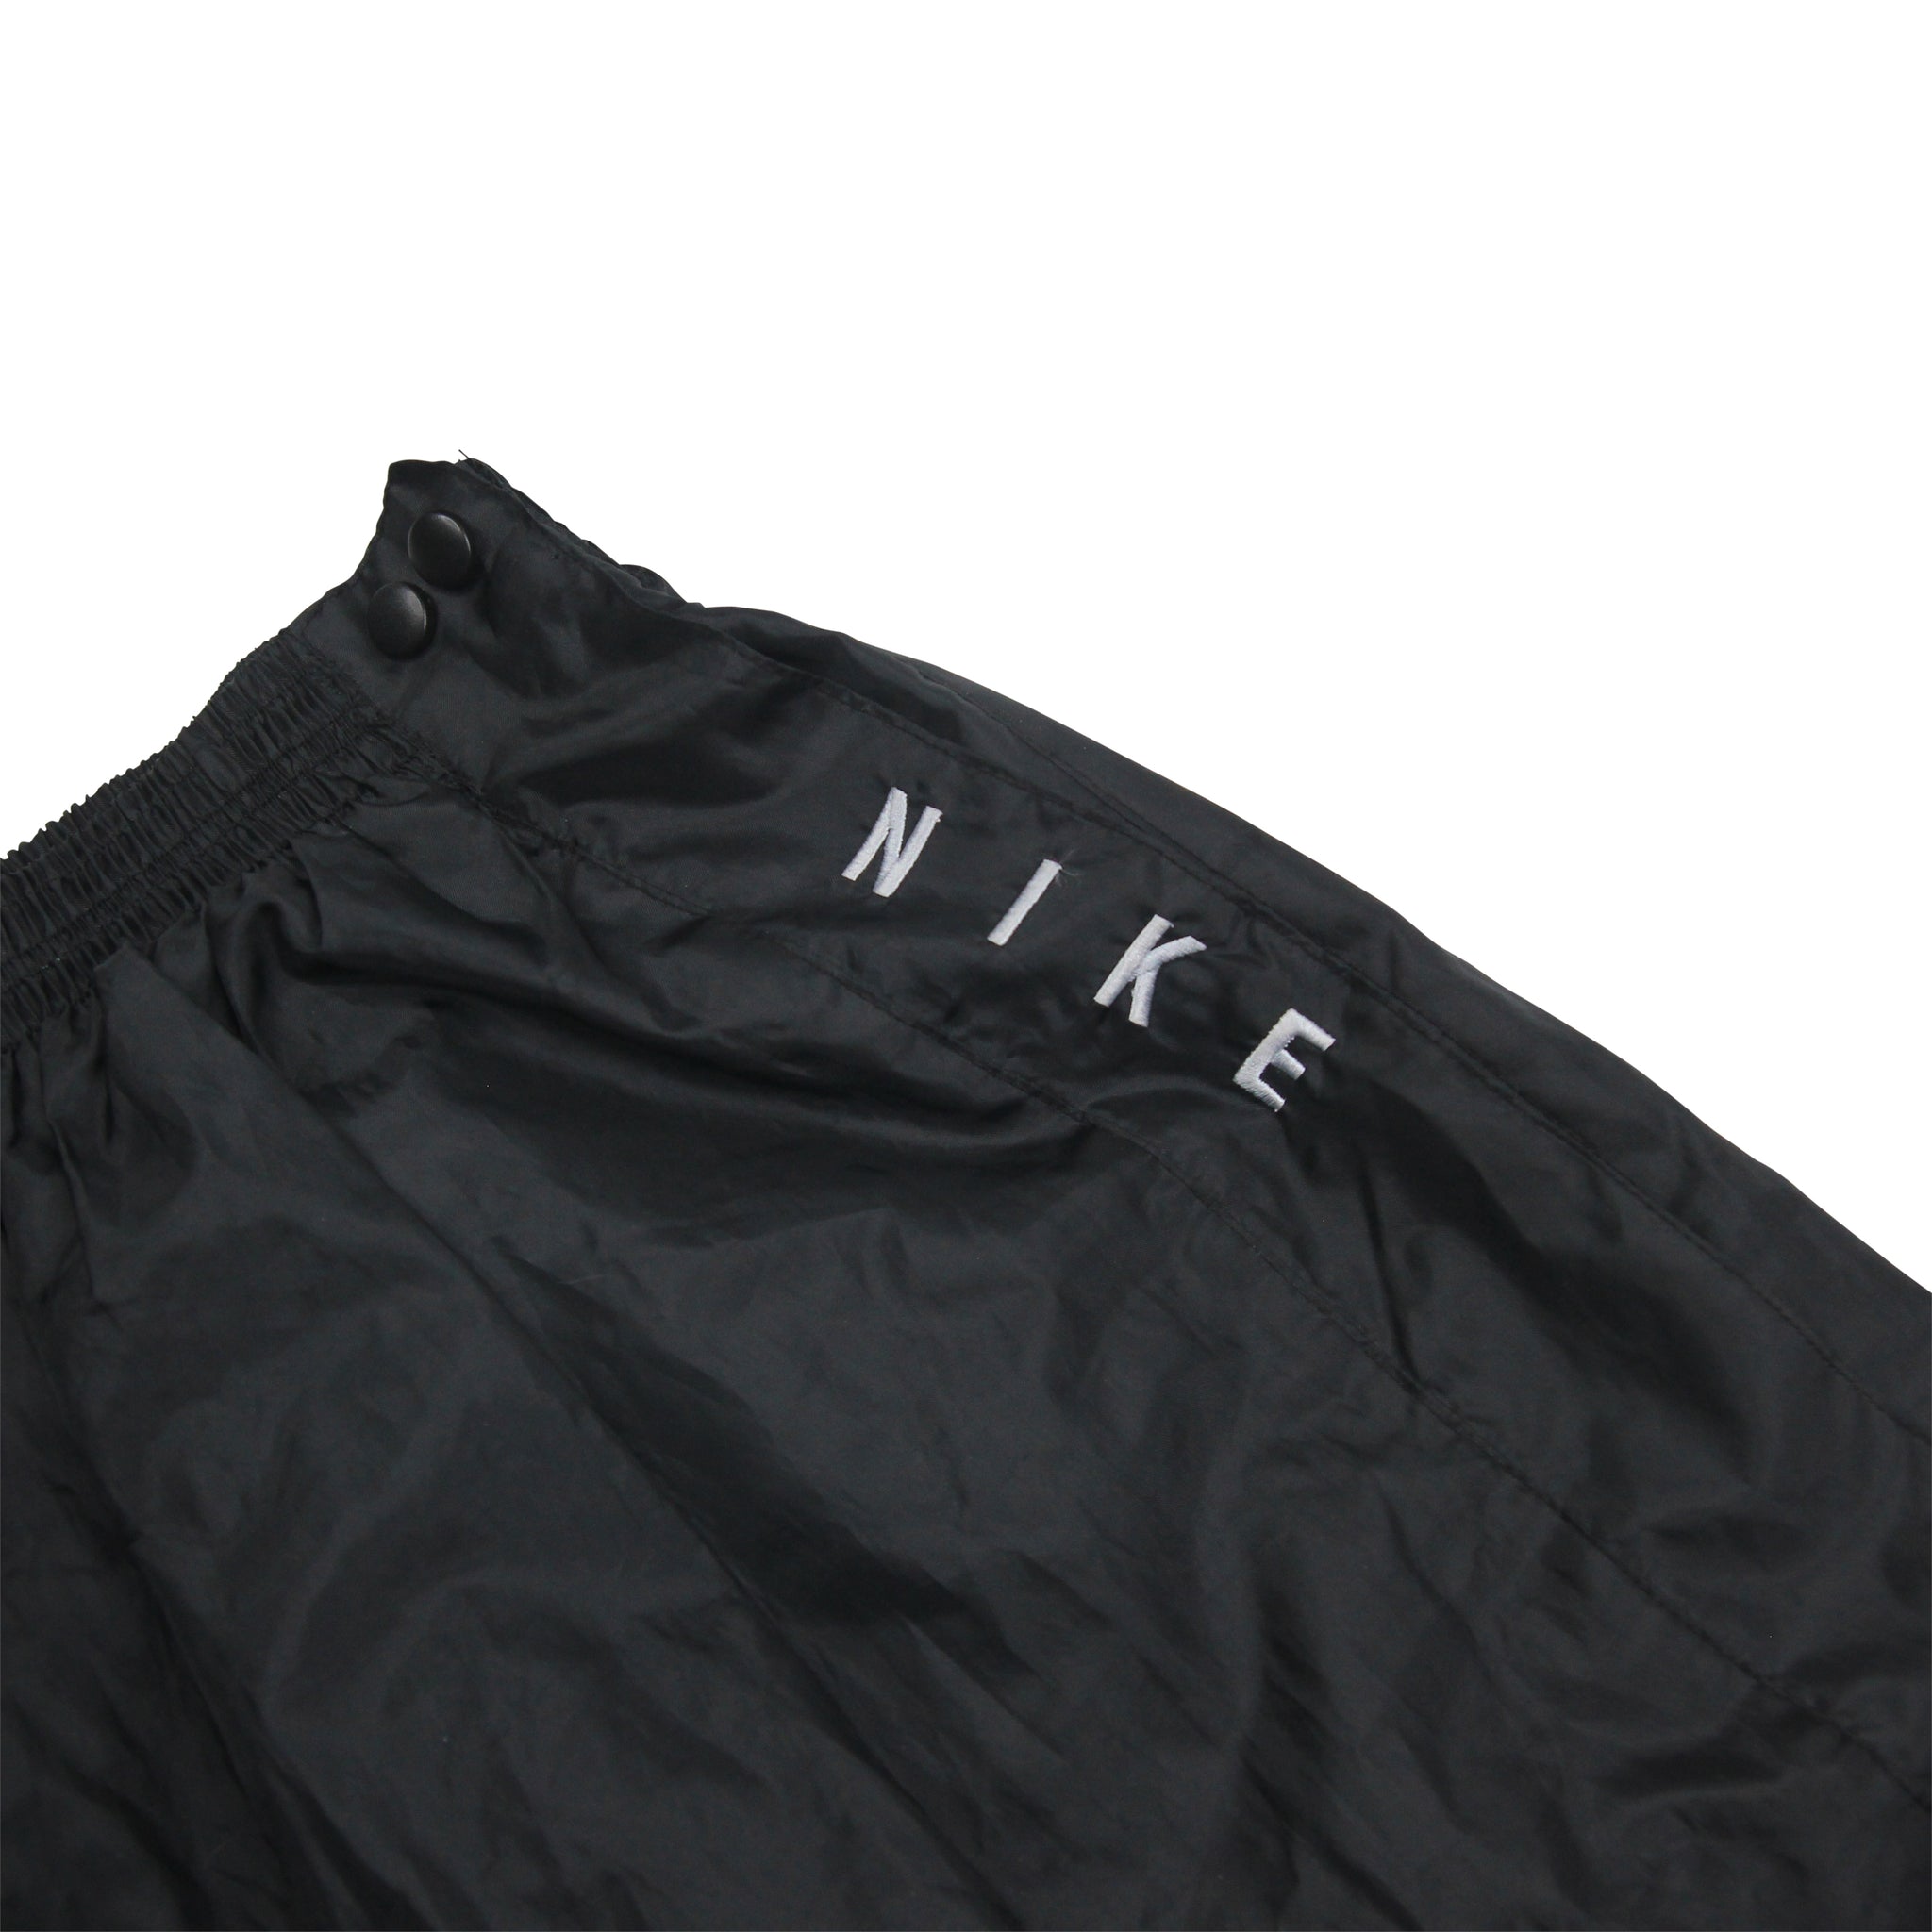 Vintage Nike Windbreaker Pants - XL